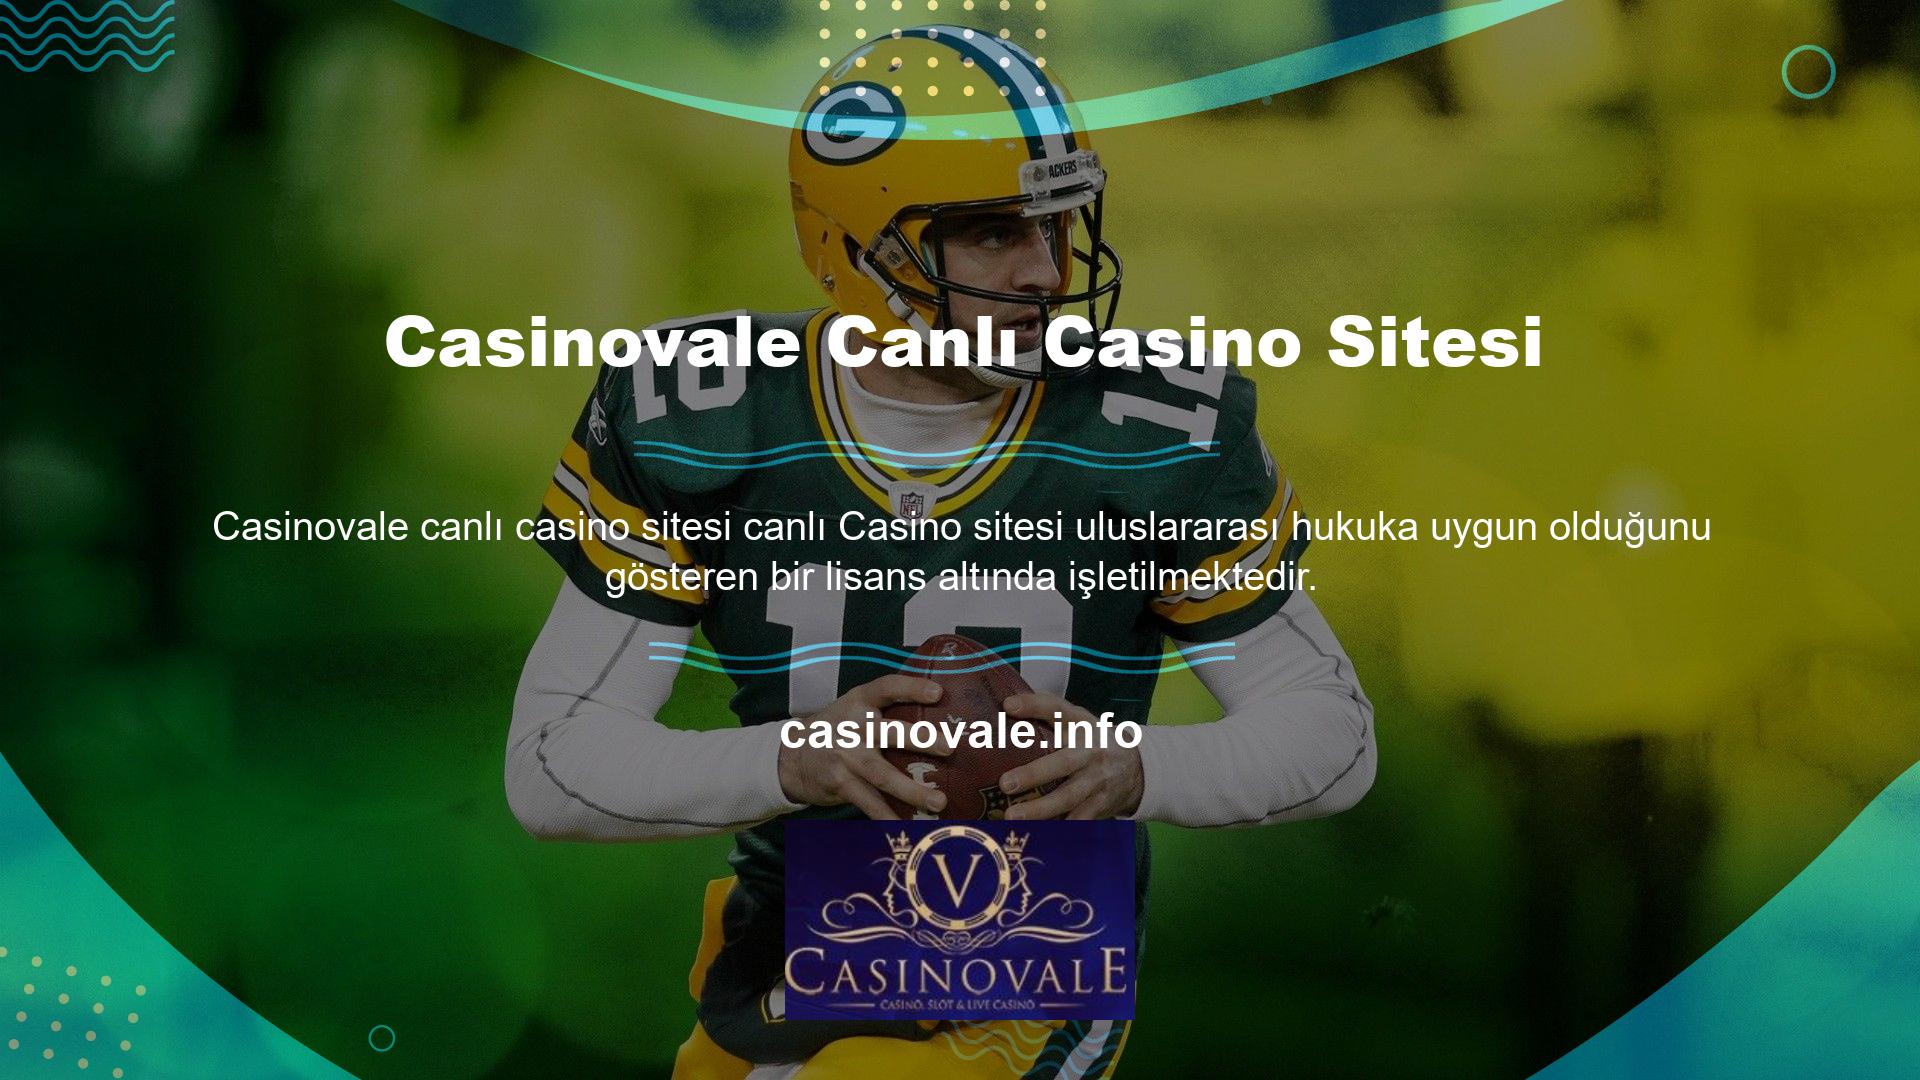 İşleminizi ülkenin en güvenilir casino sitesinin şikayetler sayfasına gönderin ve derhal çözüleceğinden emin olun